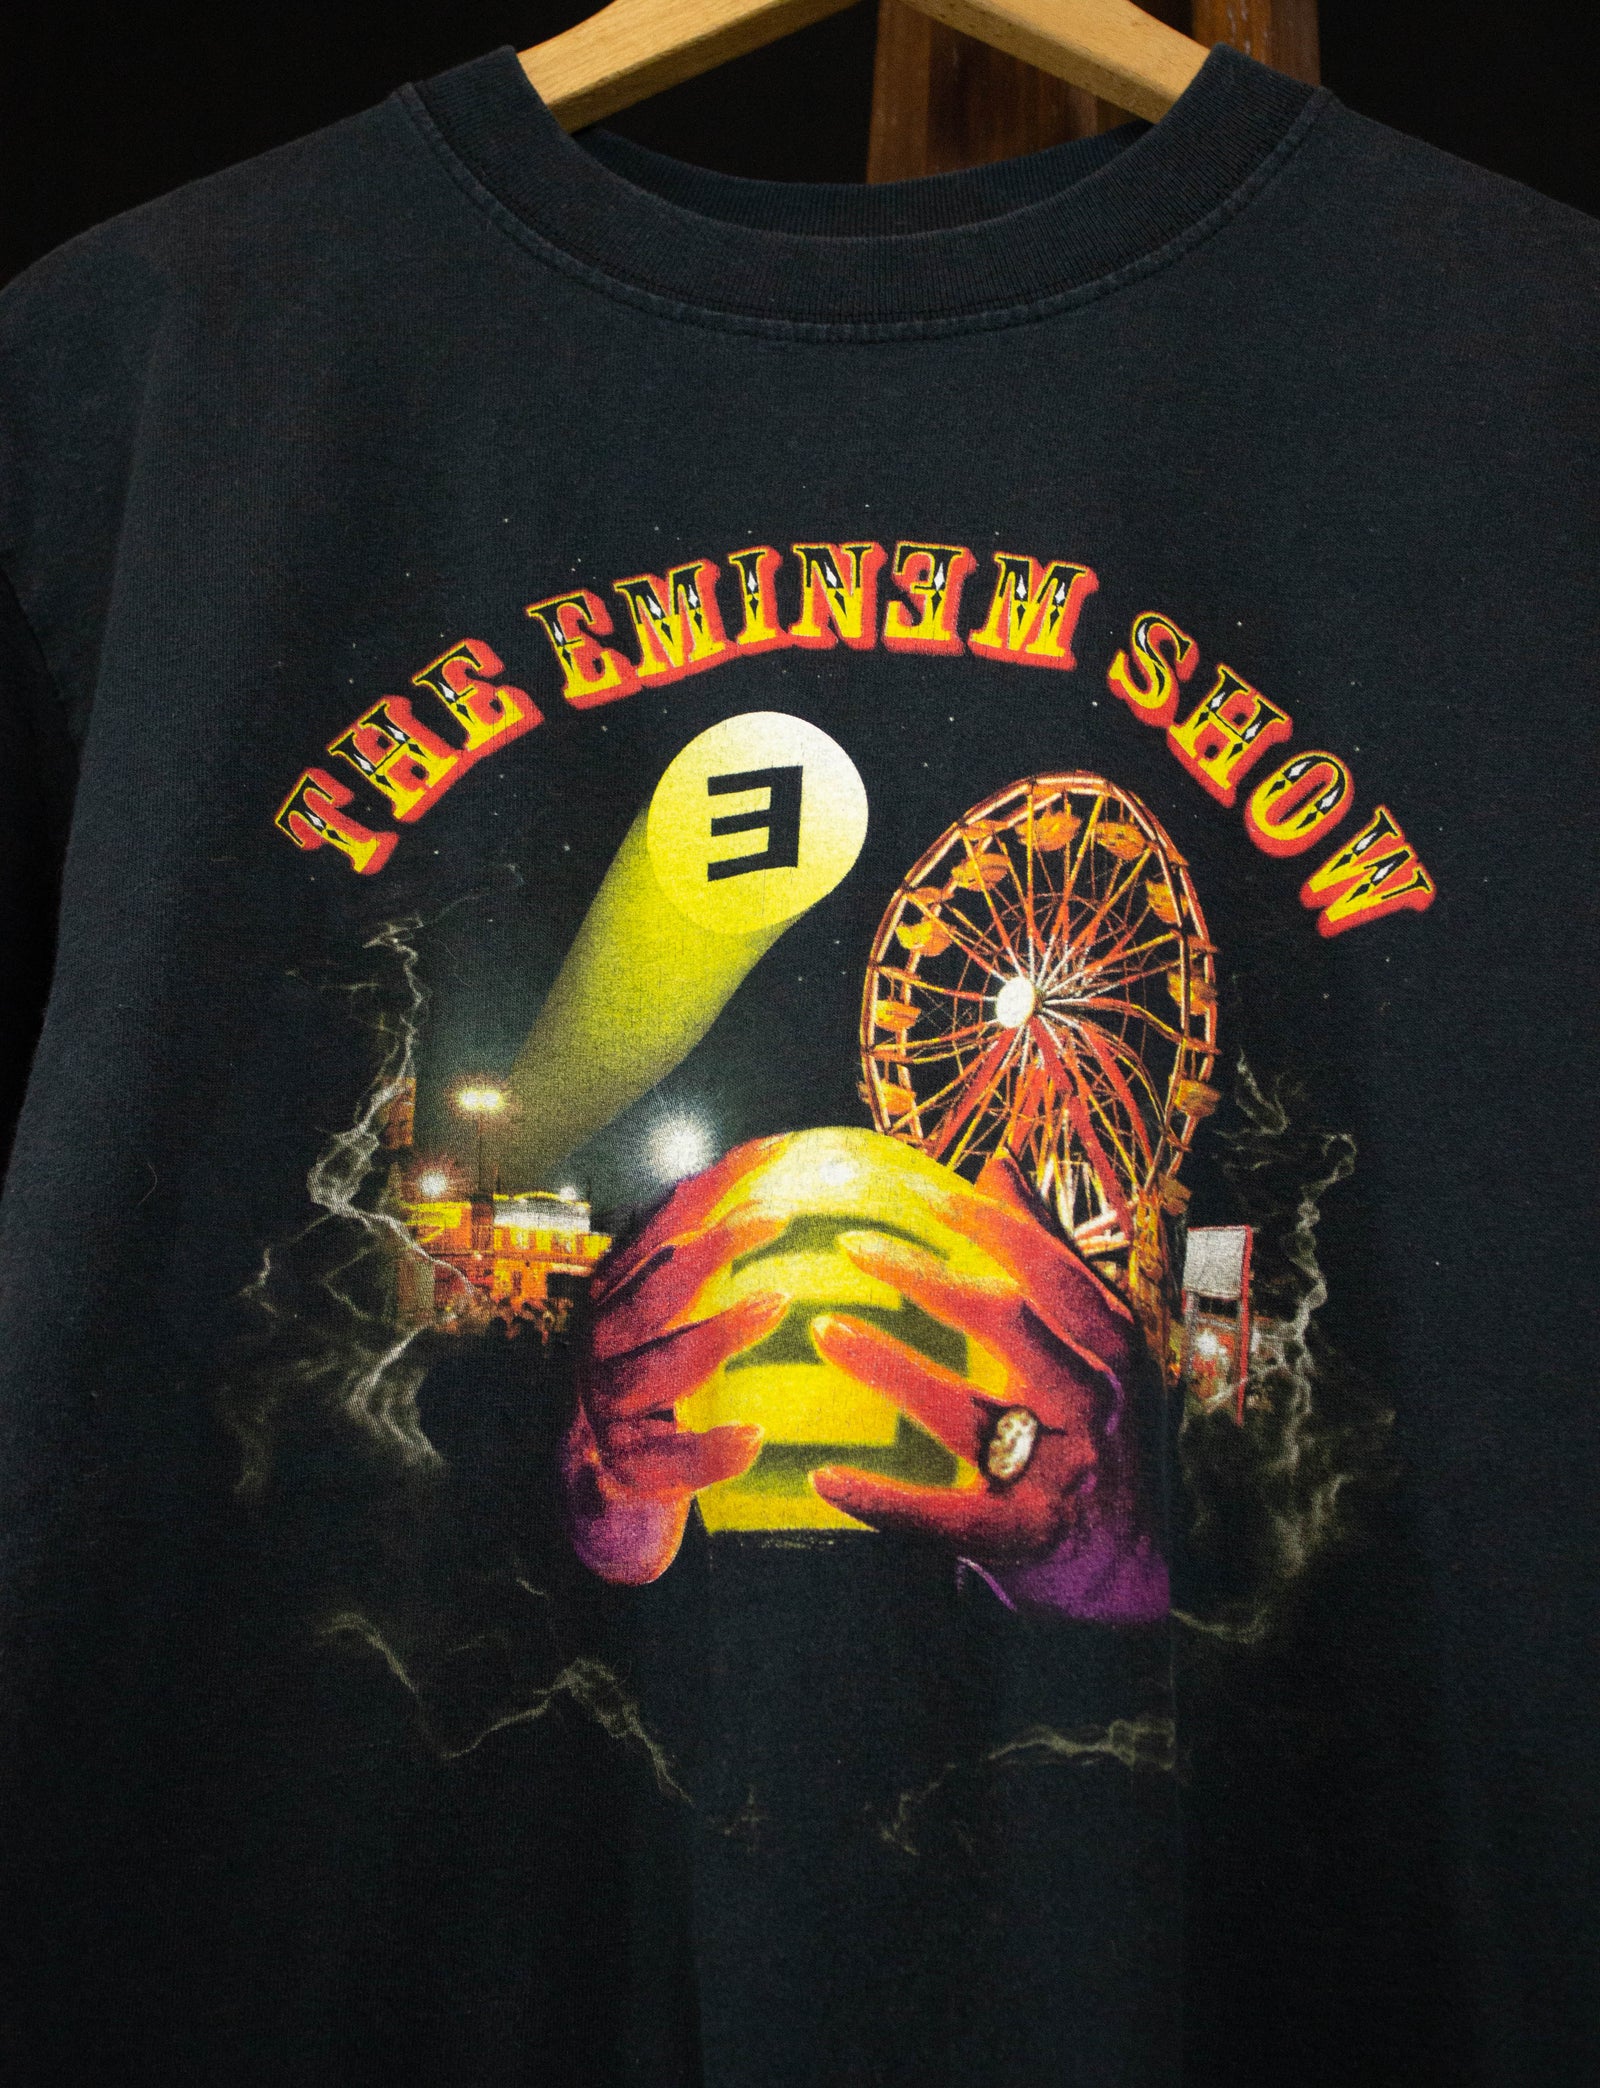 2002 Eminem "The Eminem Show" Concert T Shirt Black Medium